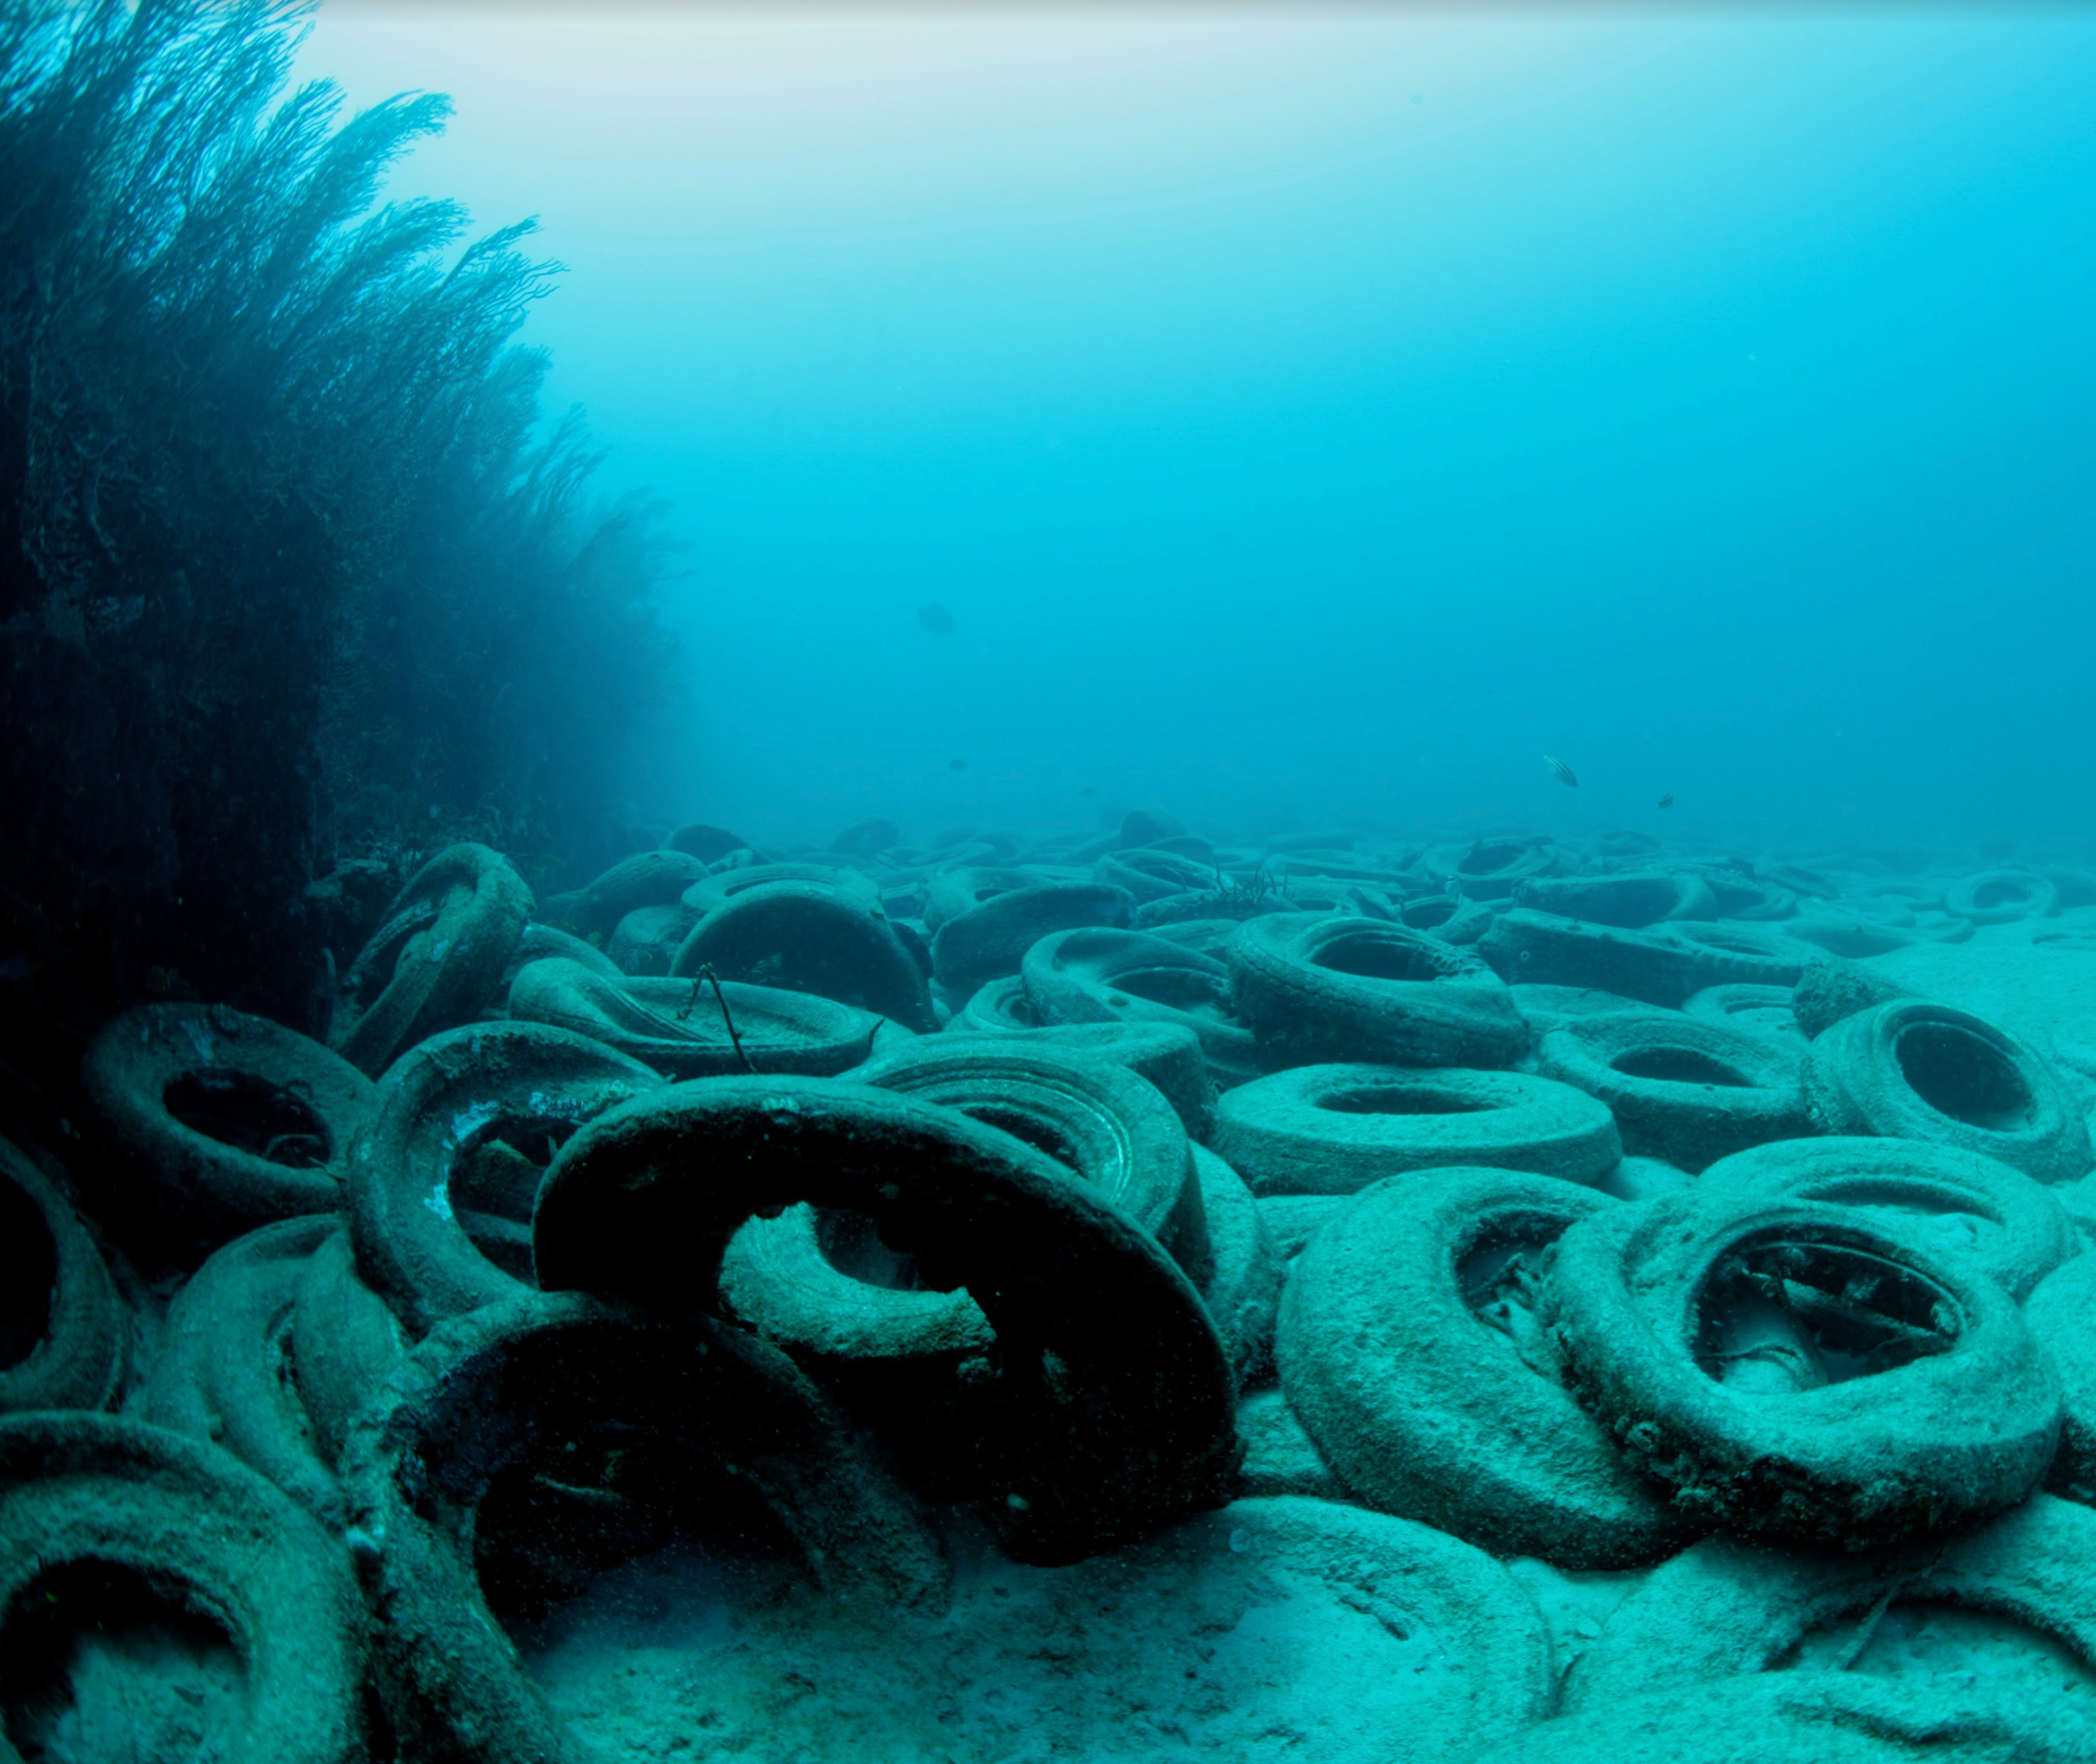 Tires on the ocean floor